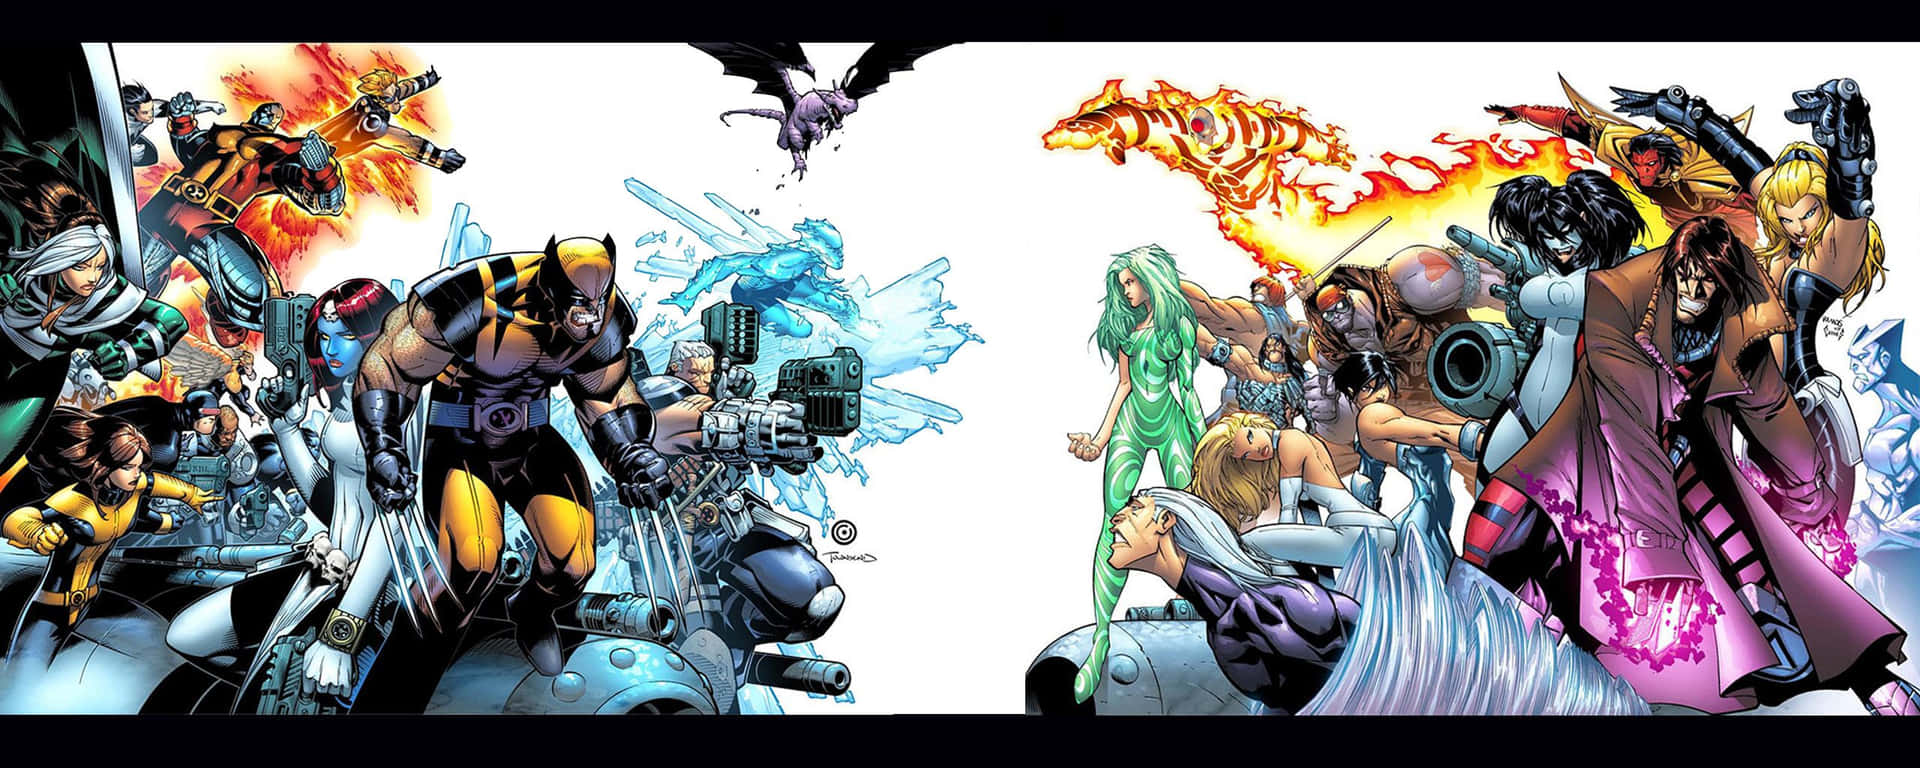 En gruppe tegneseriefigurer vises i et tegneserieagtigt miljø Wallpaper